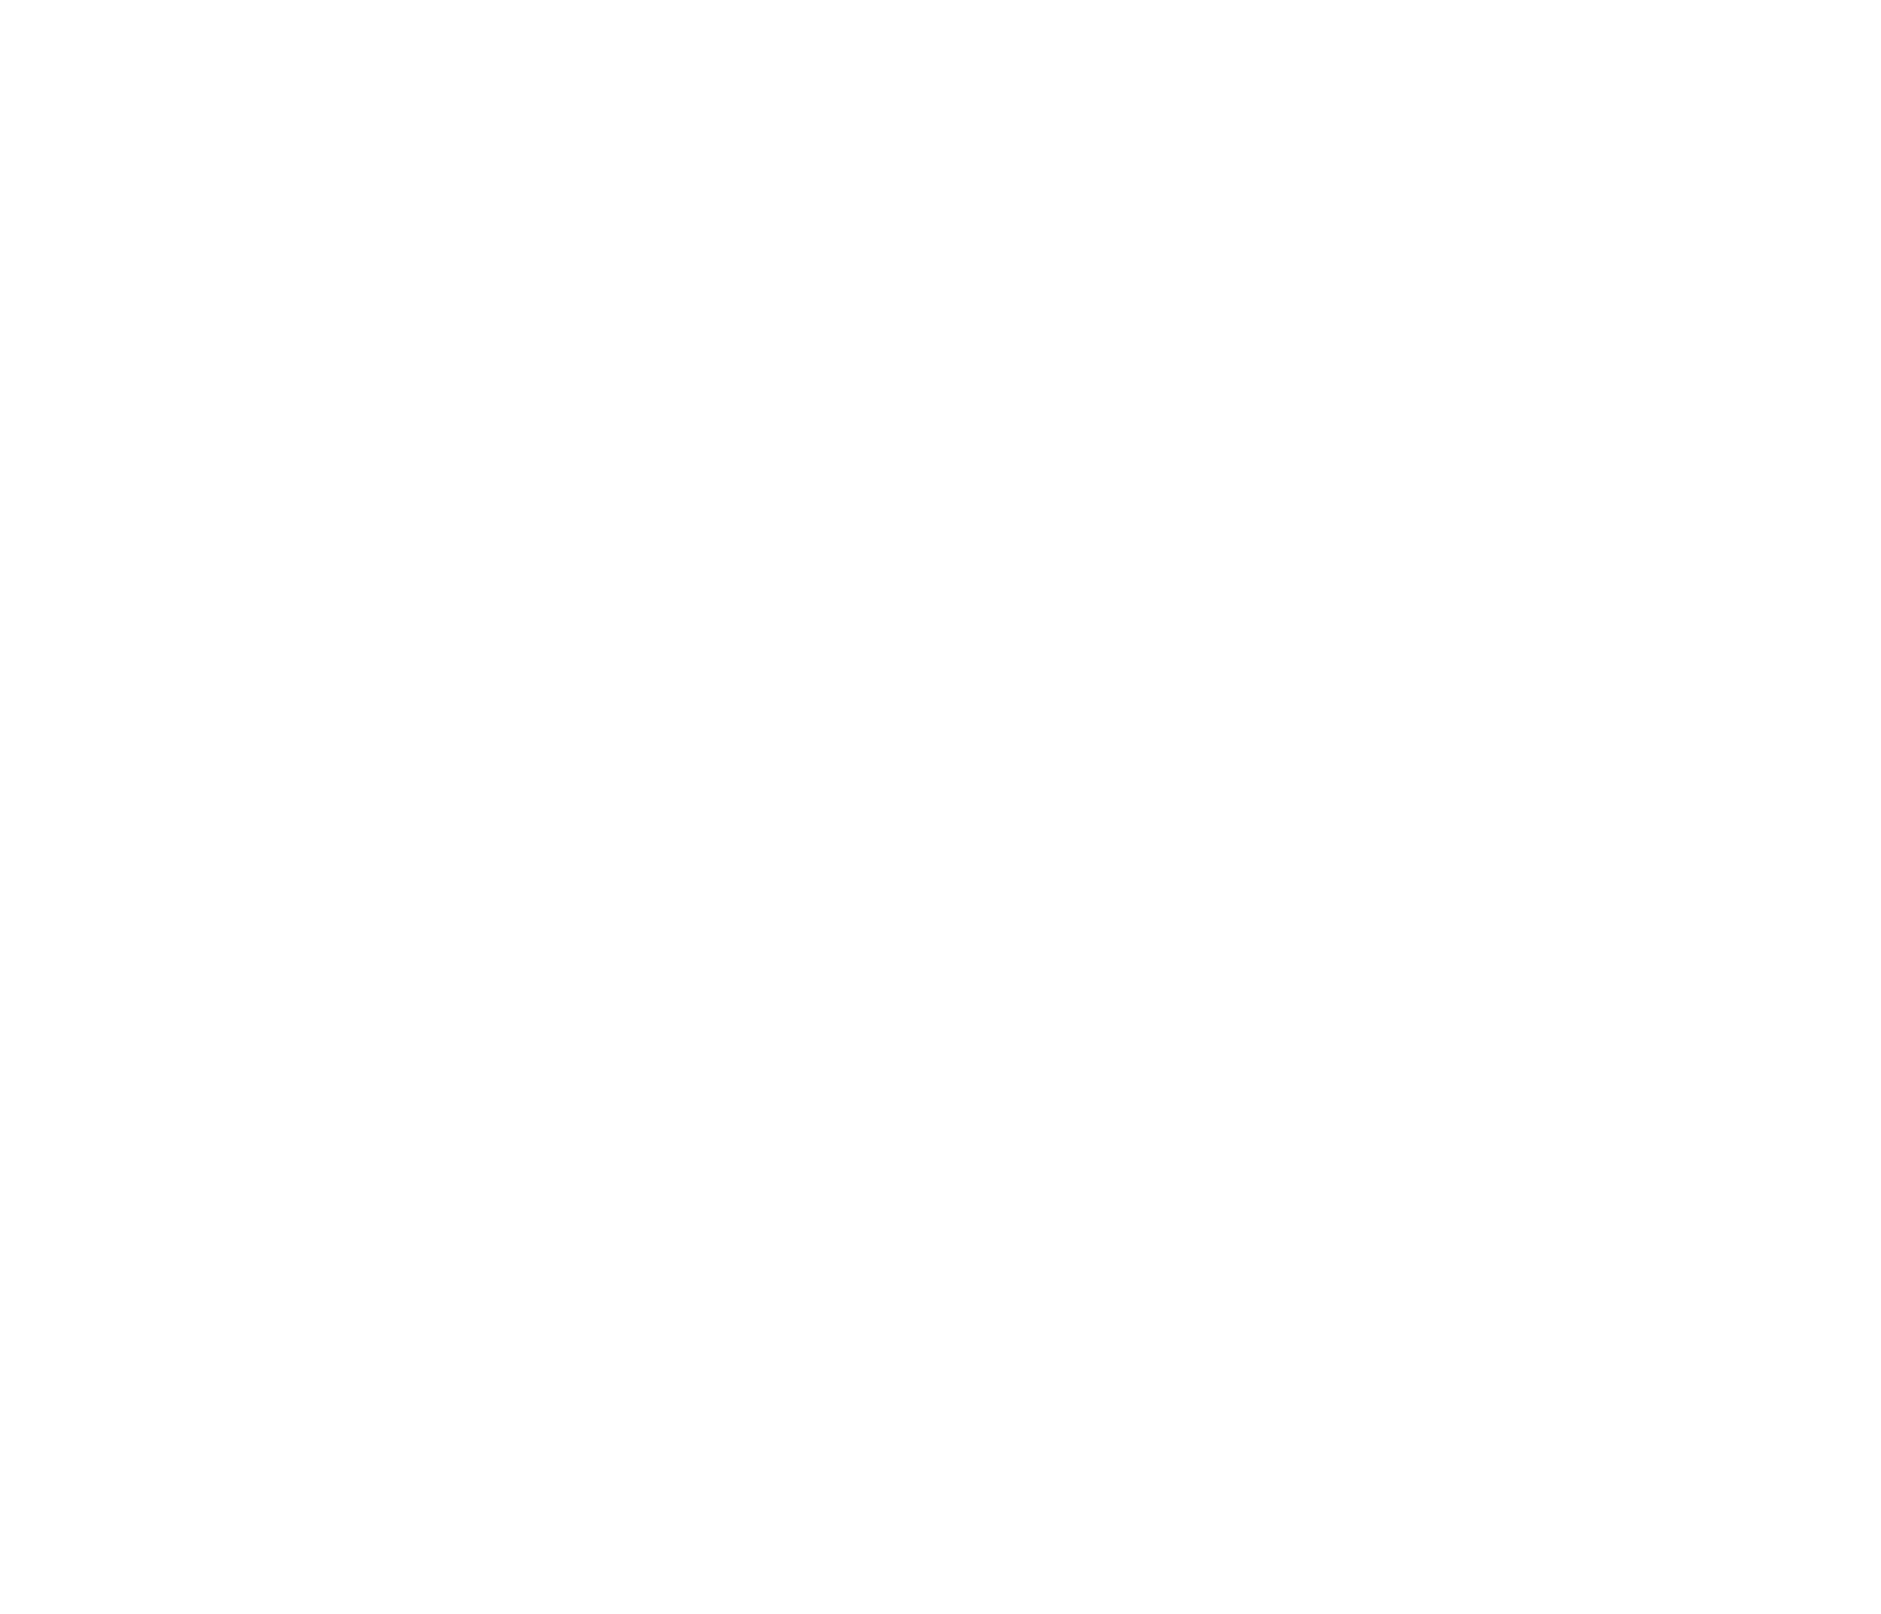 “Leon